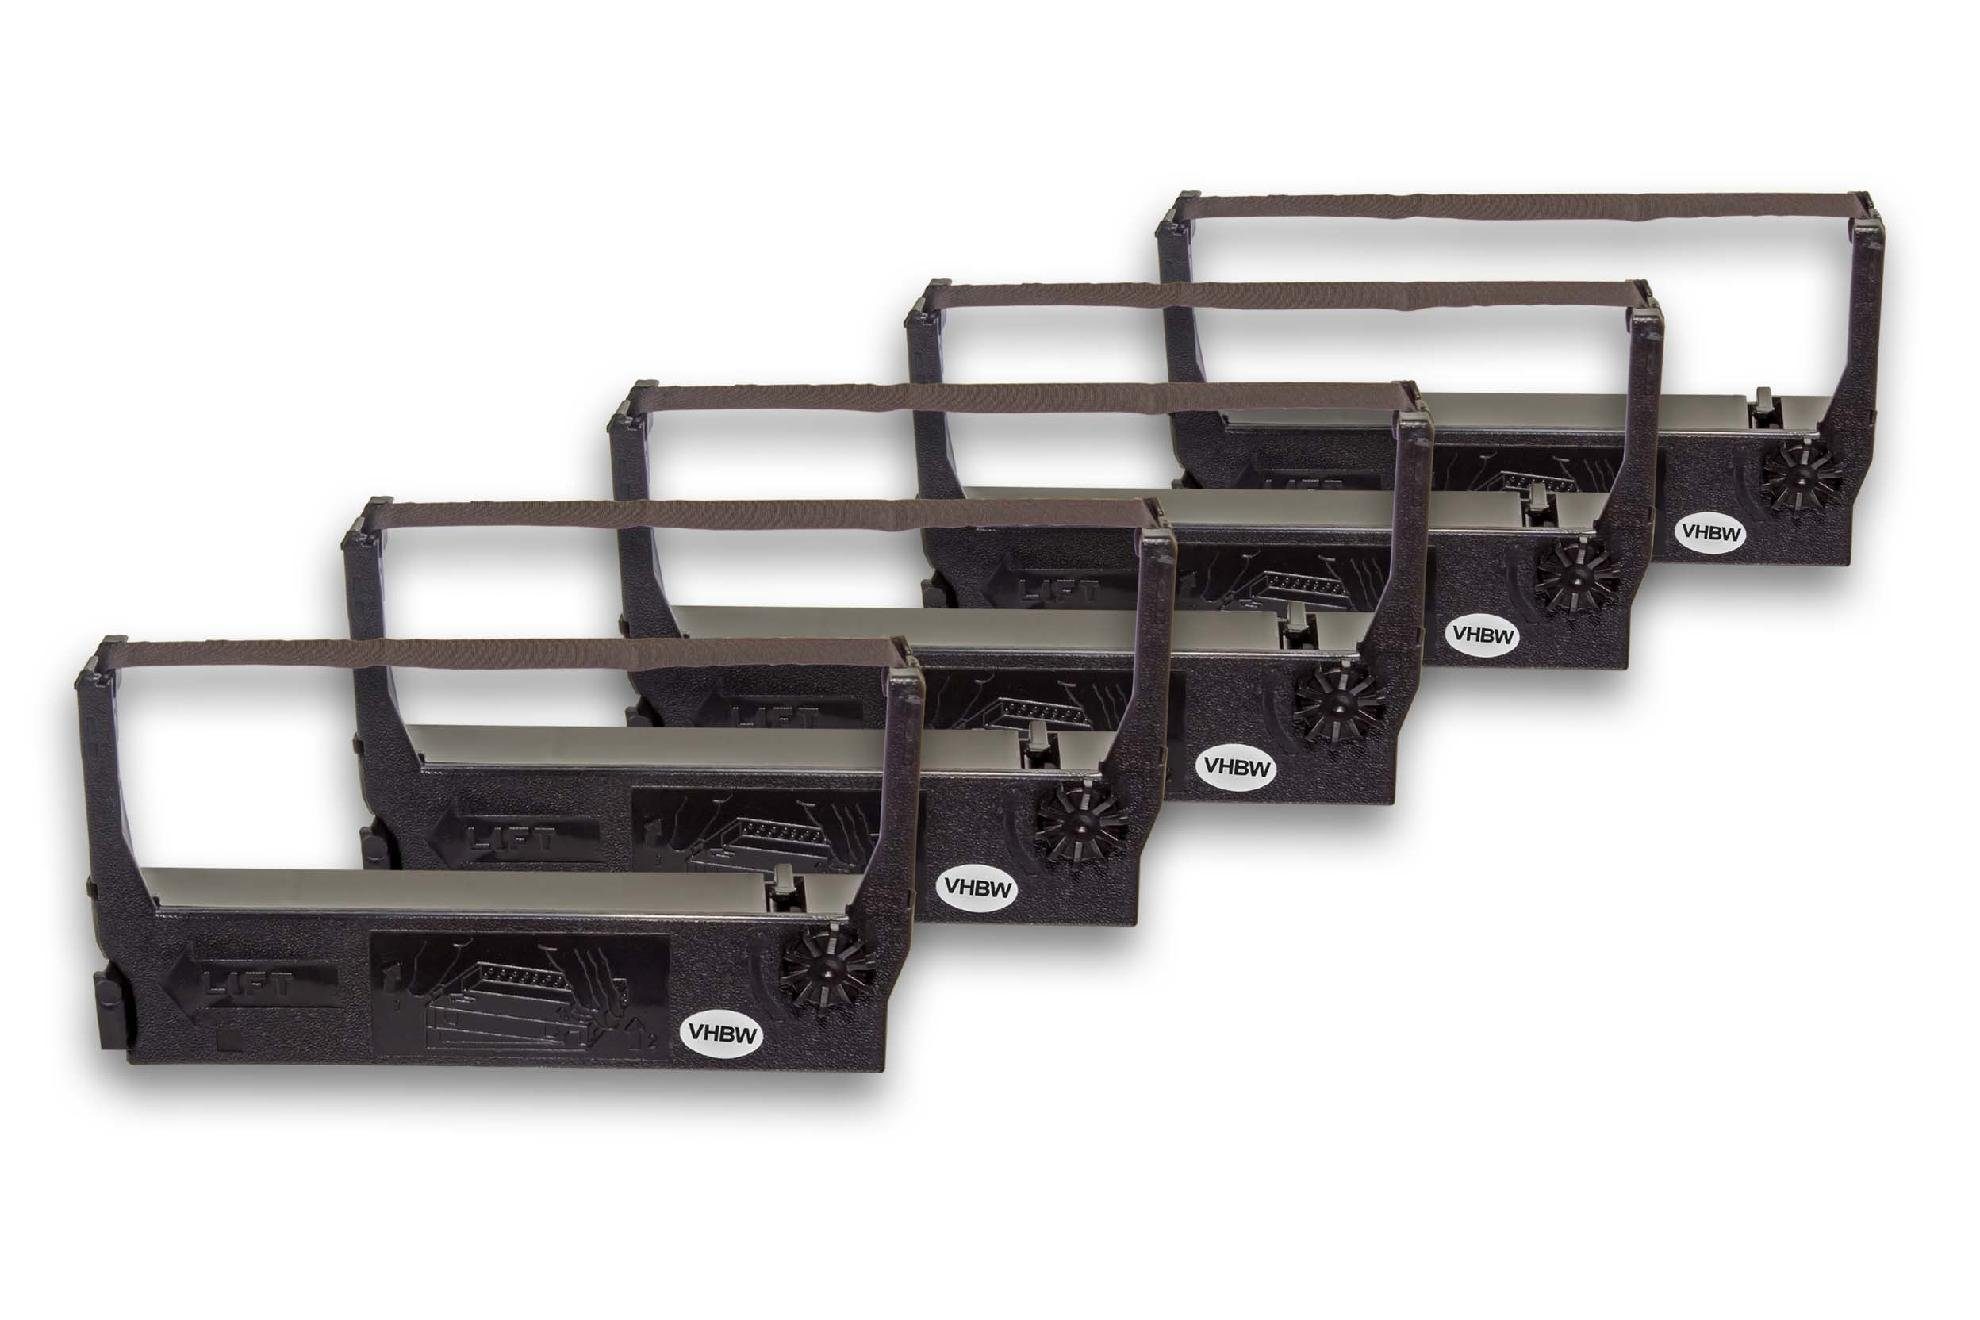 3210 Kopierer ER passend Beschriftungsband, ECR für 590, Drucker & Nadeldrucker Sanyo ECR Series, ECR 3210, vhbw 590 595, ECR